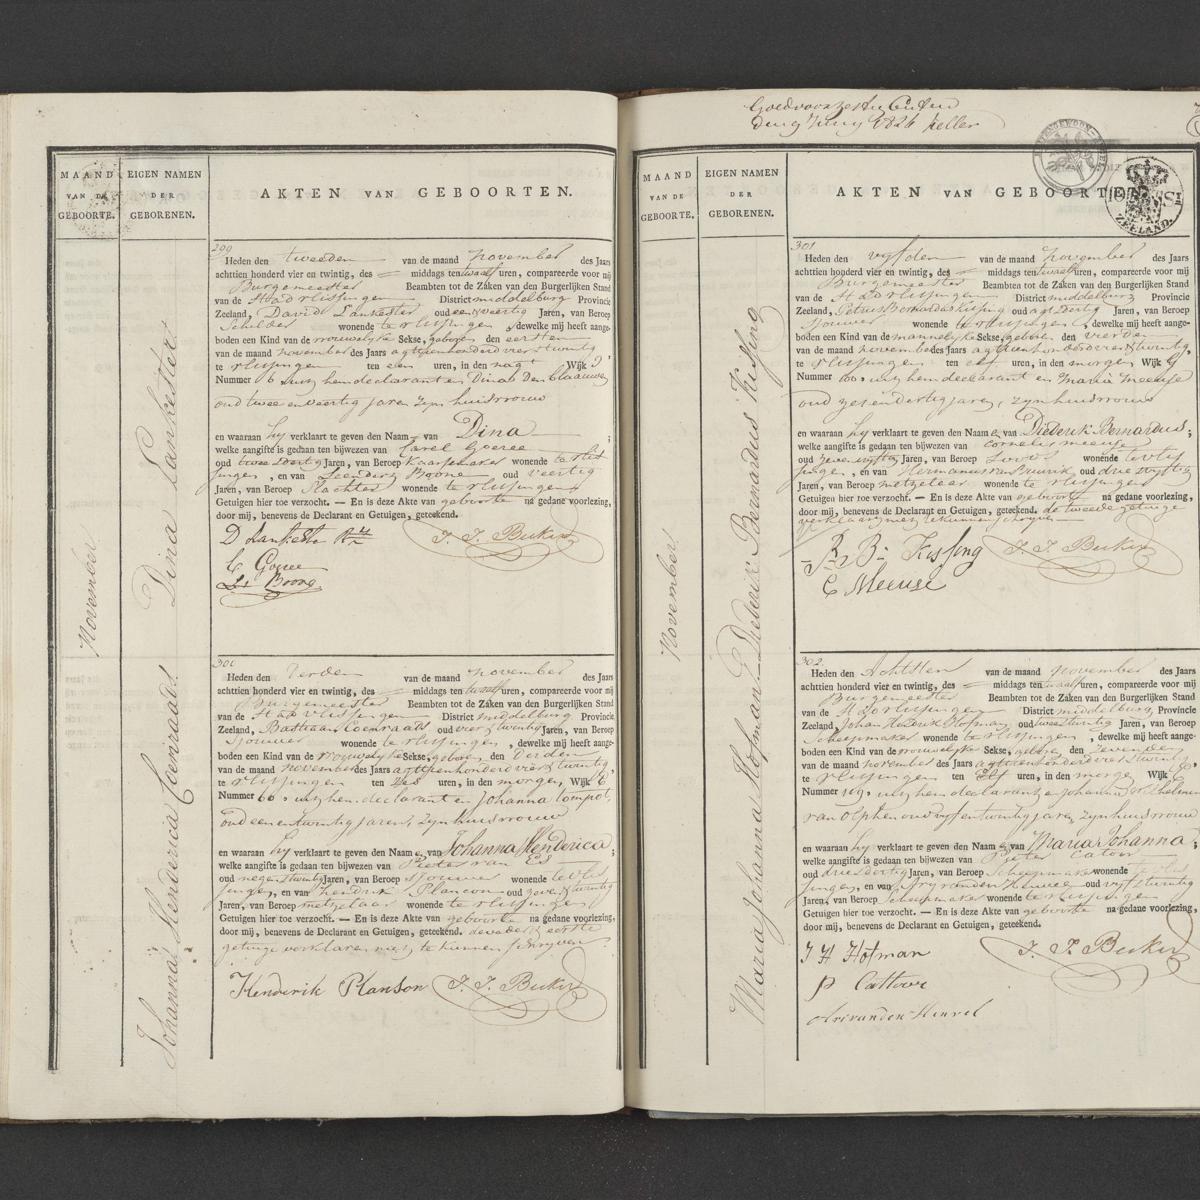 Civil registry of births, Vlissingen, 1824, records 299-302